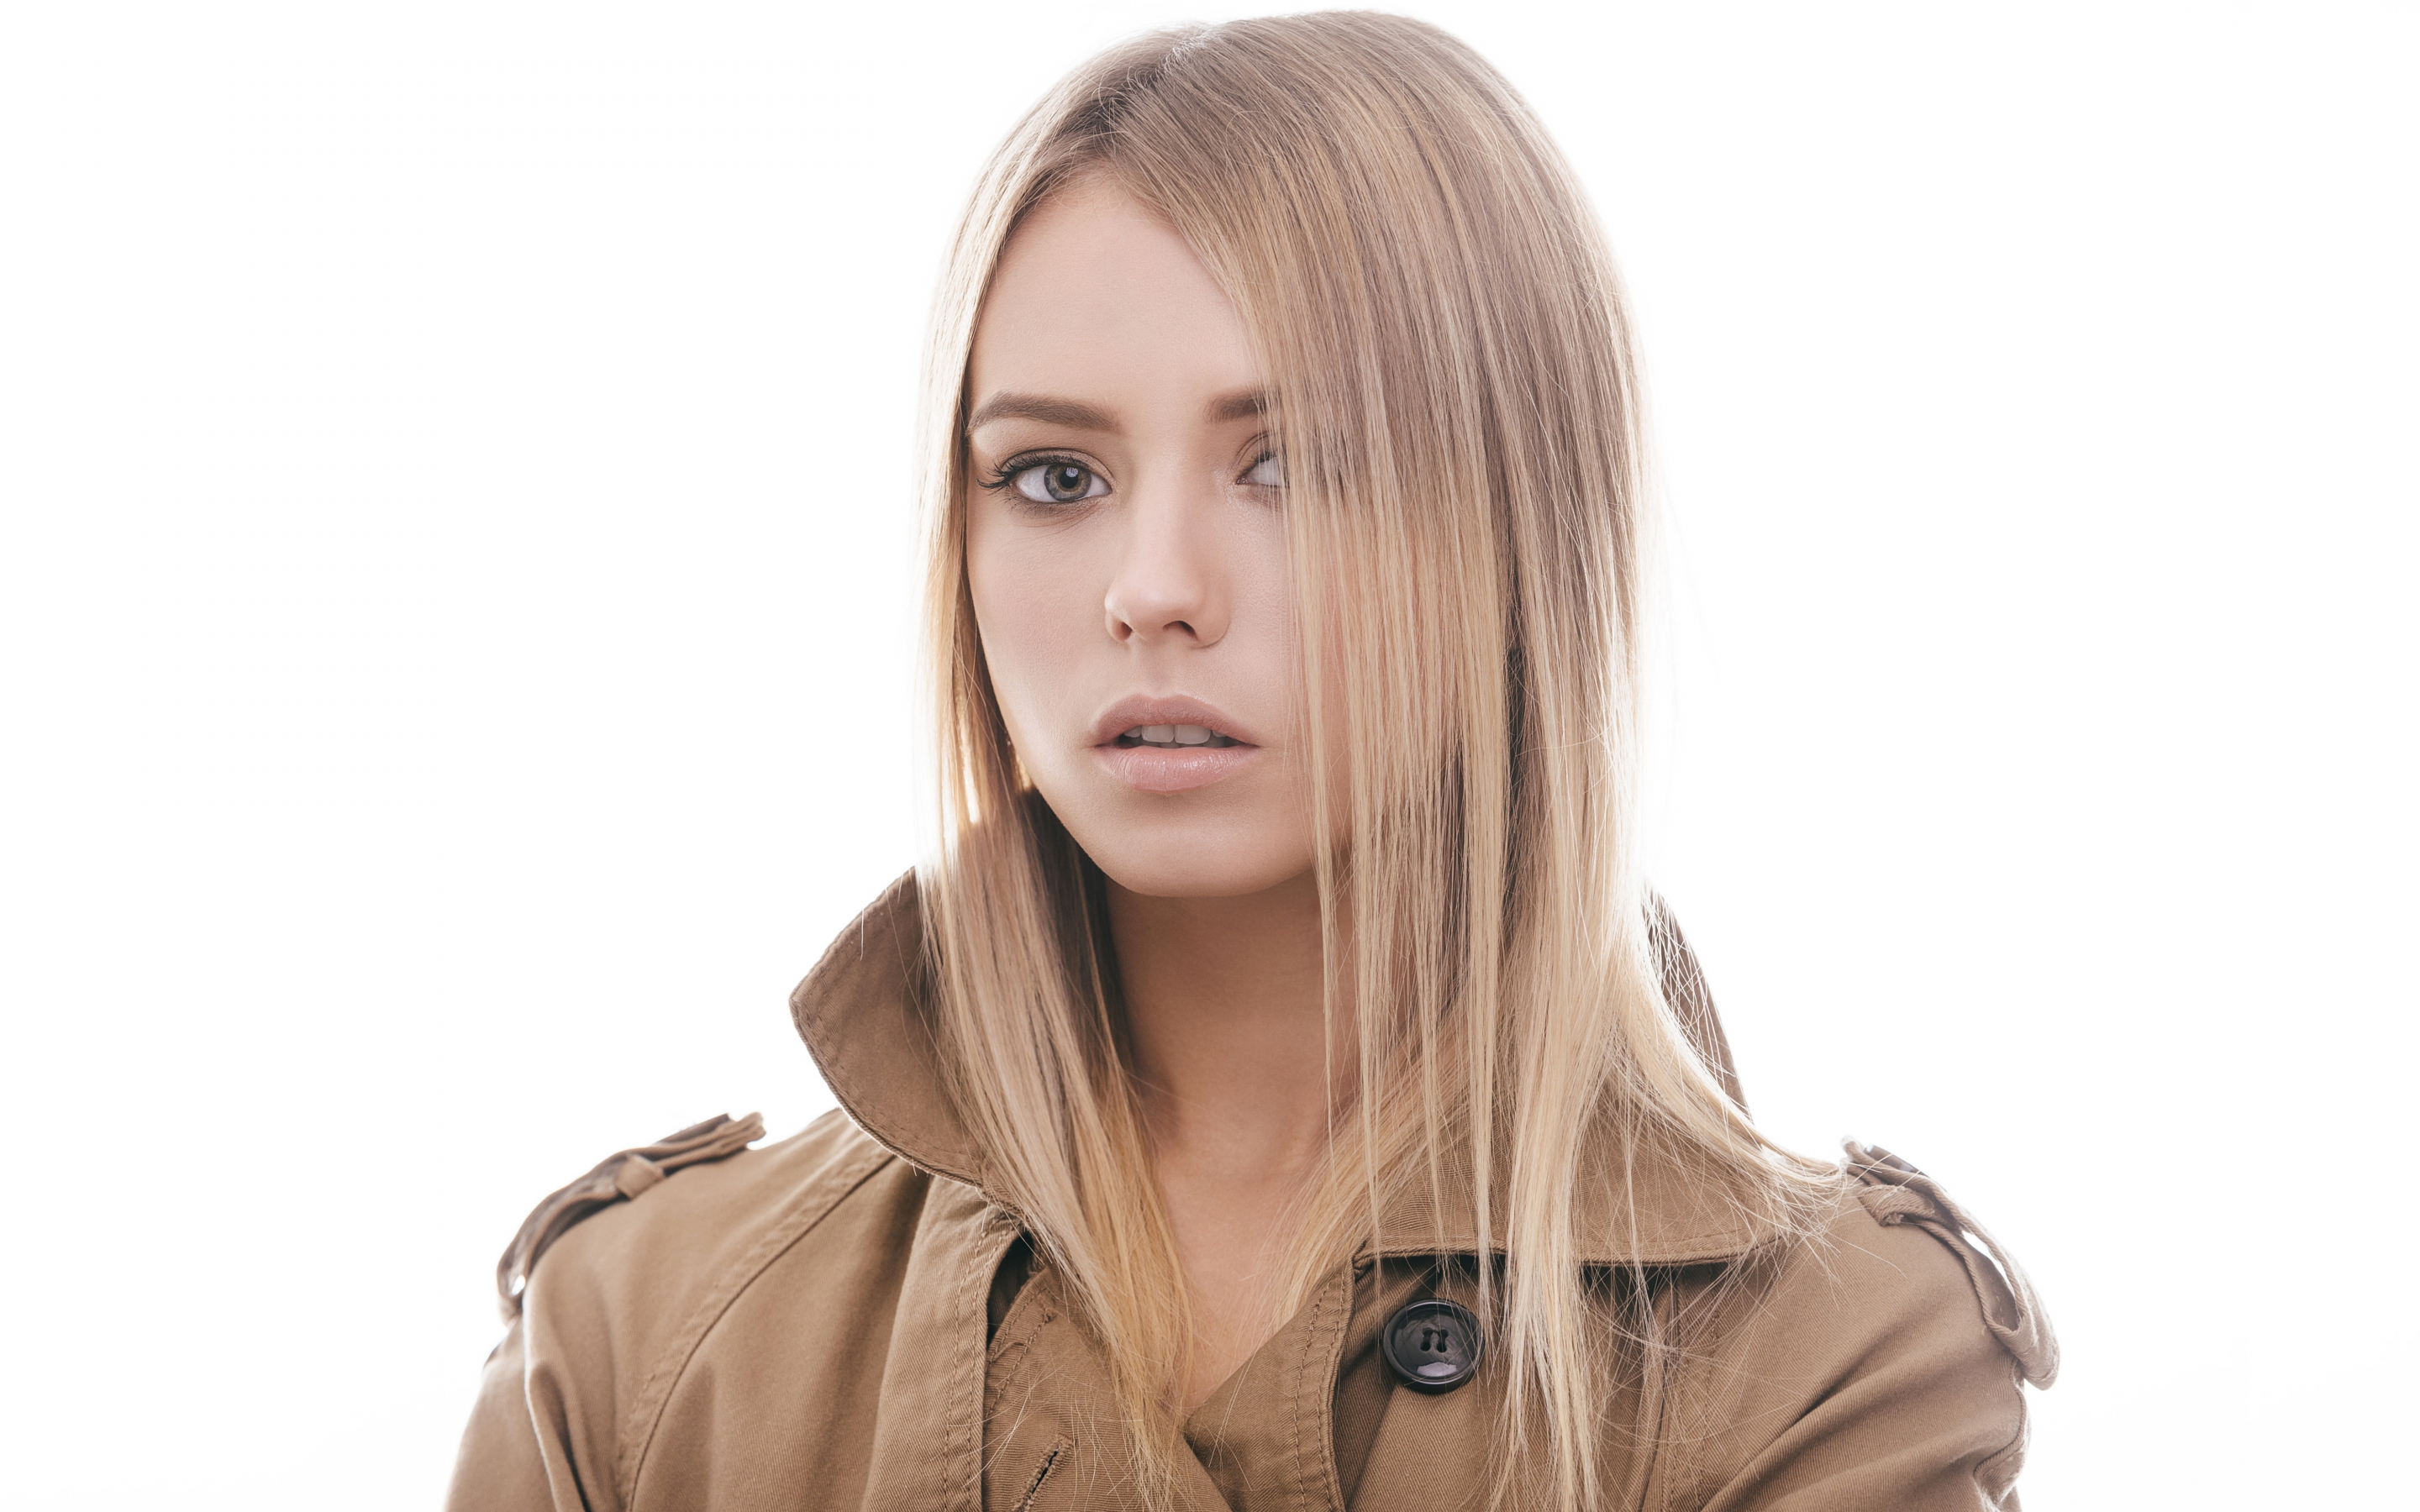 Blonde, hair on face, girl model, coat, 2880x1800 wallpaper